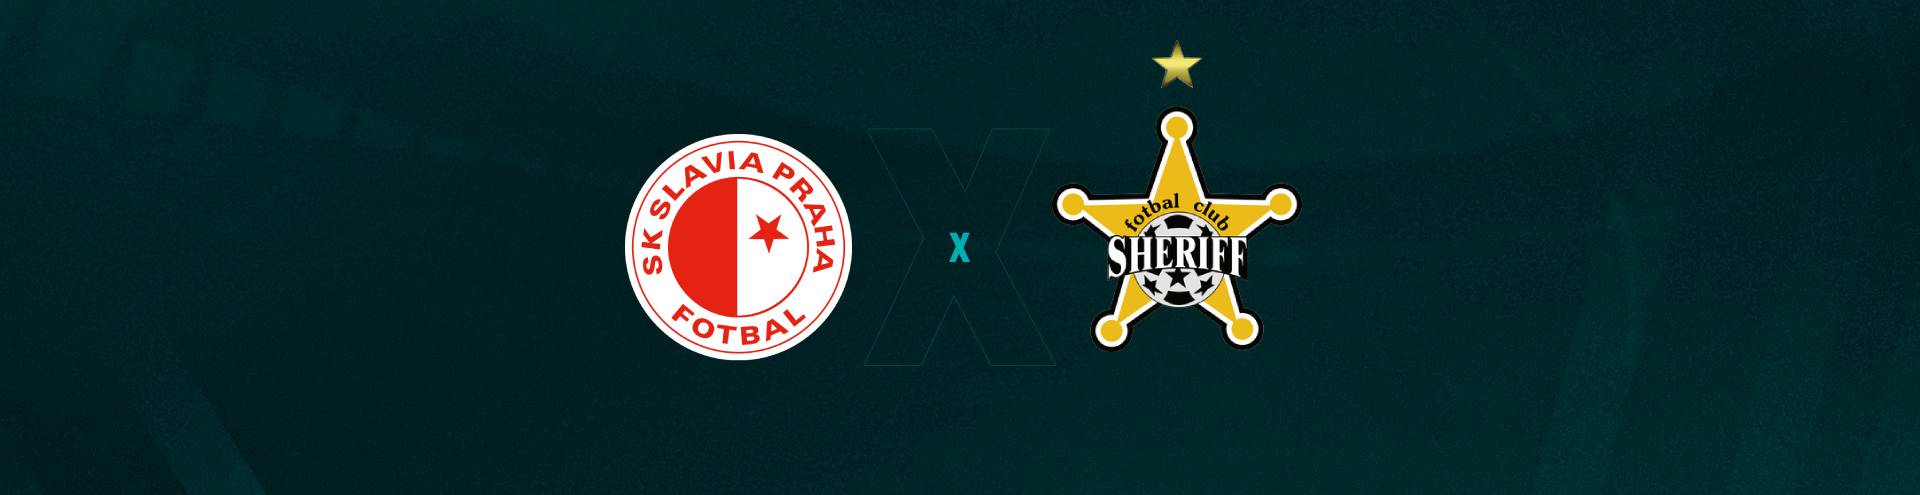 Palpite Slavia Praga x Sheriff: 05/10/2023 - Liga Europa